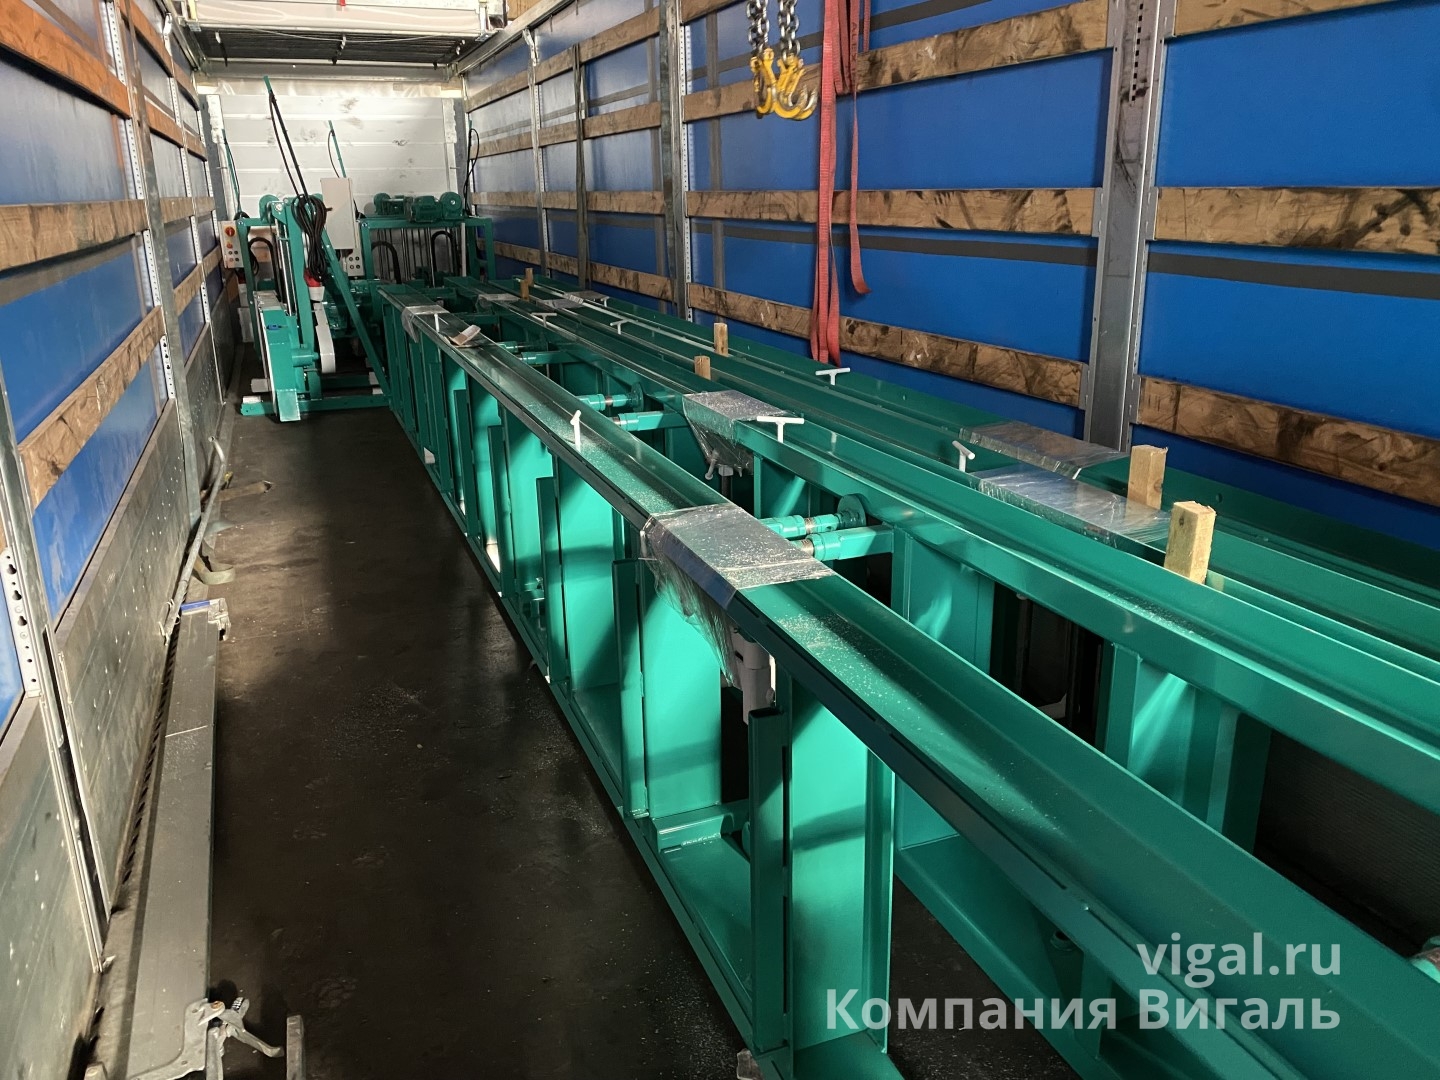 Ленточные пилорамы ZBL поступили на склад в Санкт-Петербурге